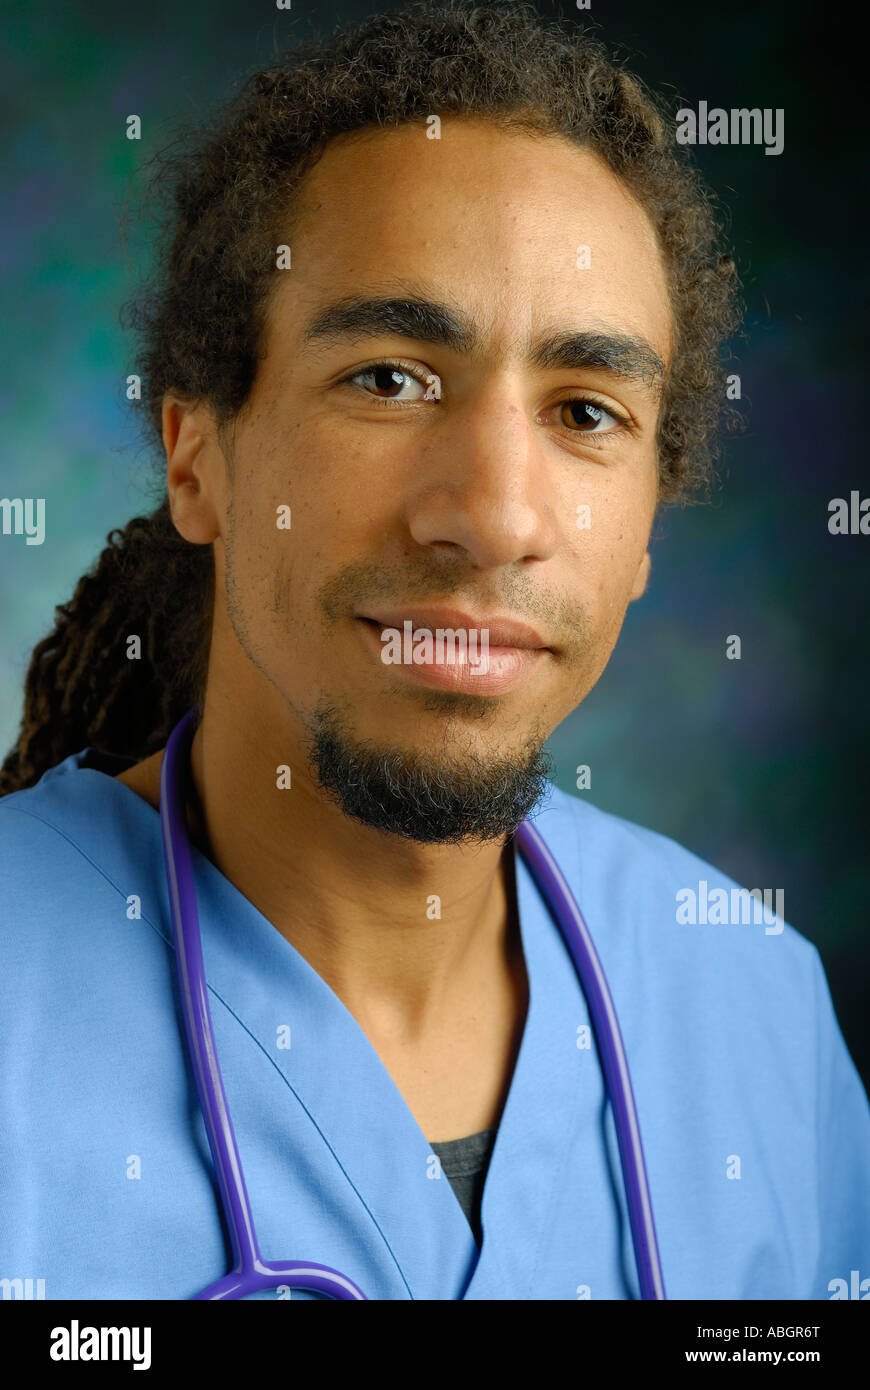 Kopfschuss eines jungen schwarzen Arztes mit Peelings und Stethoskop Stockfoto